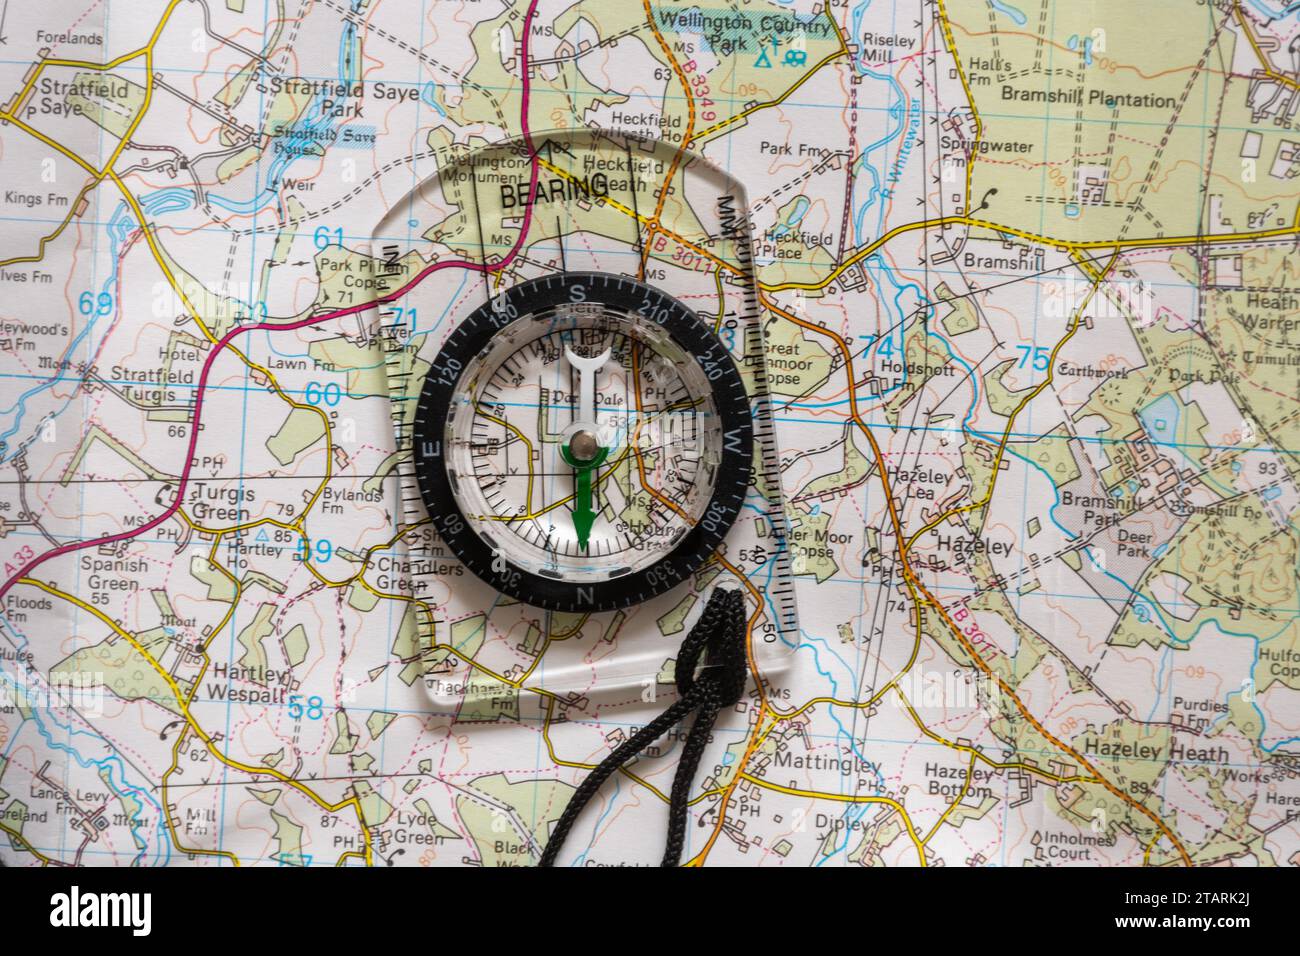 Une carte et une boussole, Angleterre, Royaume-Uni. Concept : navigation, trouver votre chemin, direction, relèvement Banque D'Images